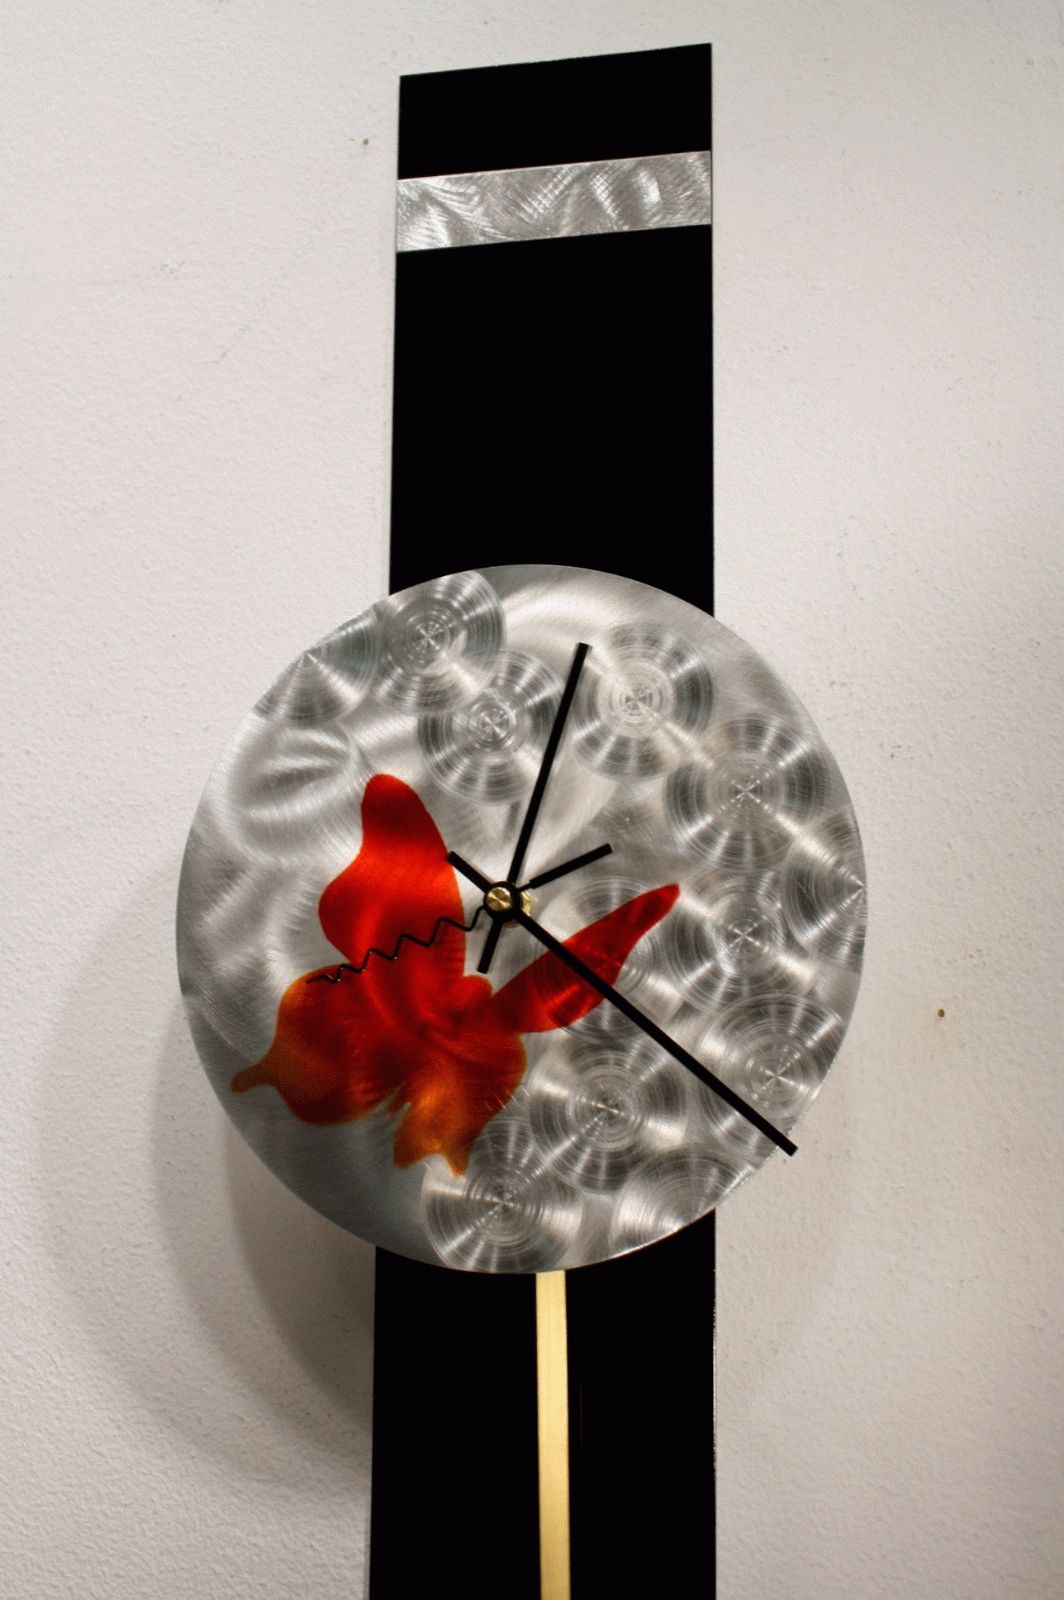 Metal Wall Art Sculpture Pendulum Clock Modern Abstract Decor Throughout Most Up To Date Abstract Metal Wall Art With Clock (Gallery 19 of 20)